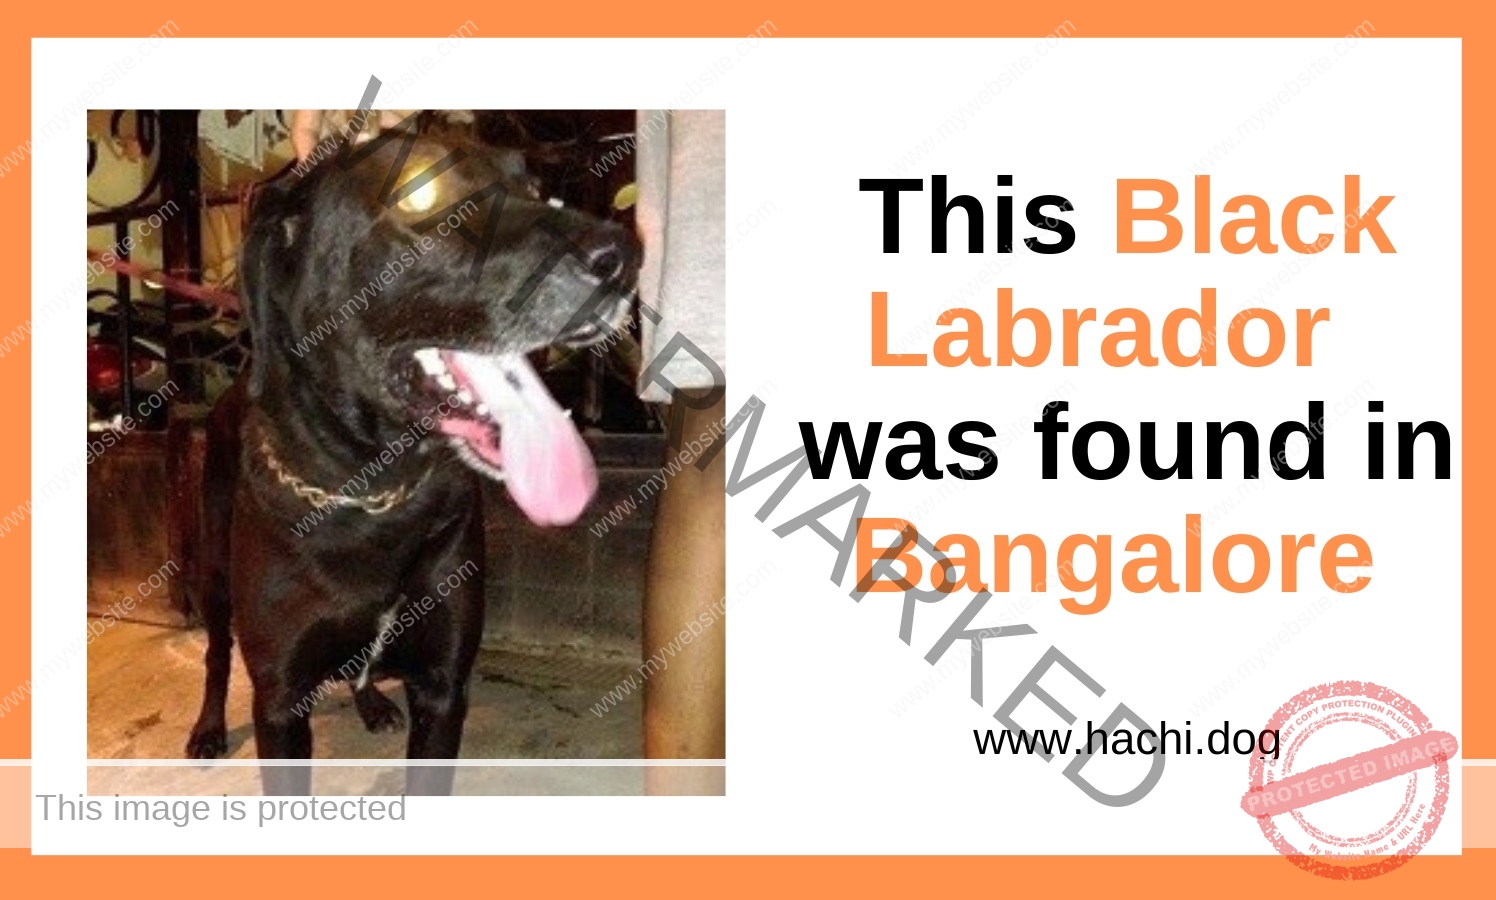 A Male Black Labrador Dog Found in Bangalore